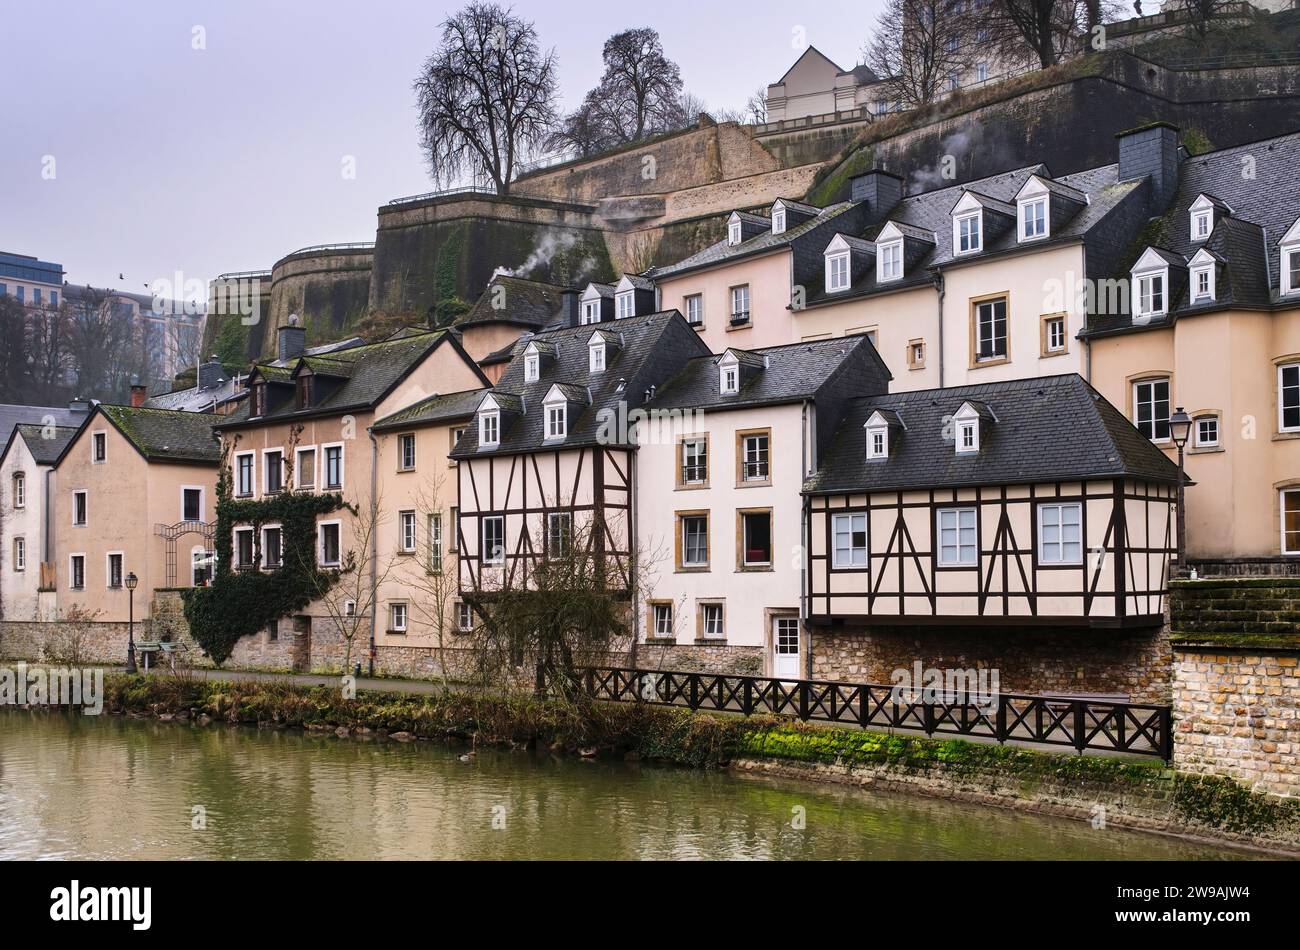 Maisons traditionnelles dans le quartier du Grund dans la ville de Luxembourg, sur les rives de la rivière Alzette avec ambiance hivernale. Banque D'Images